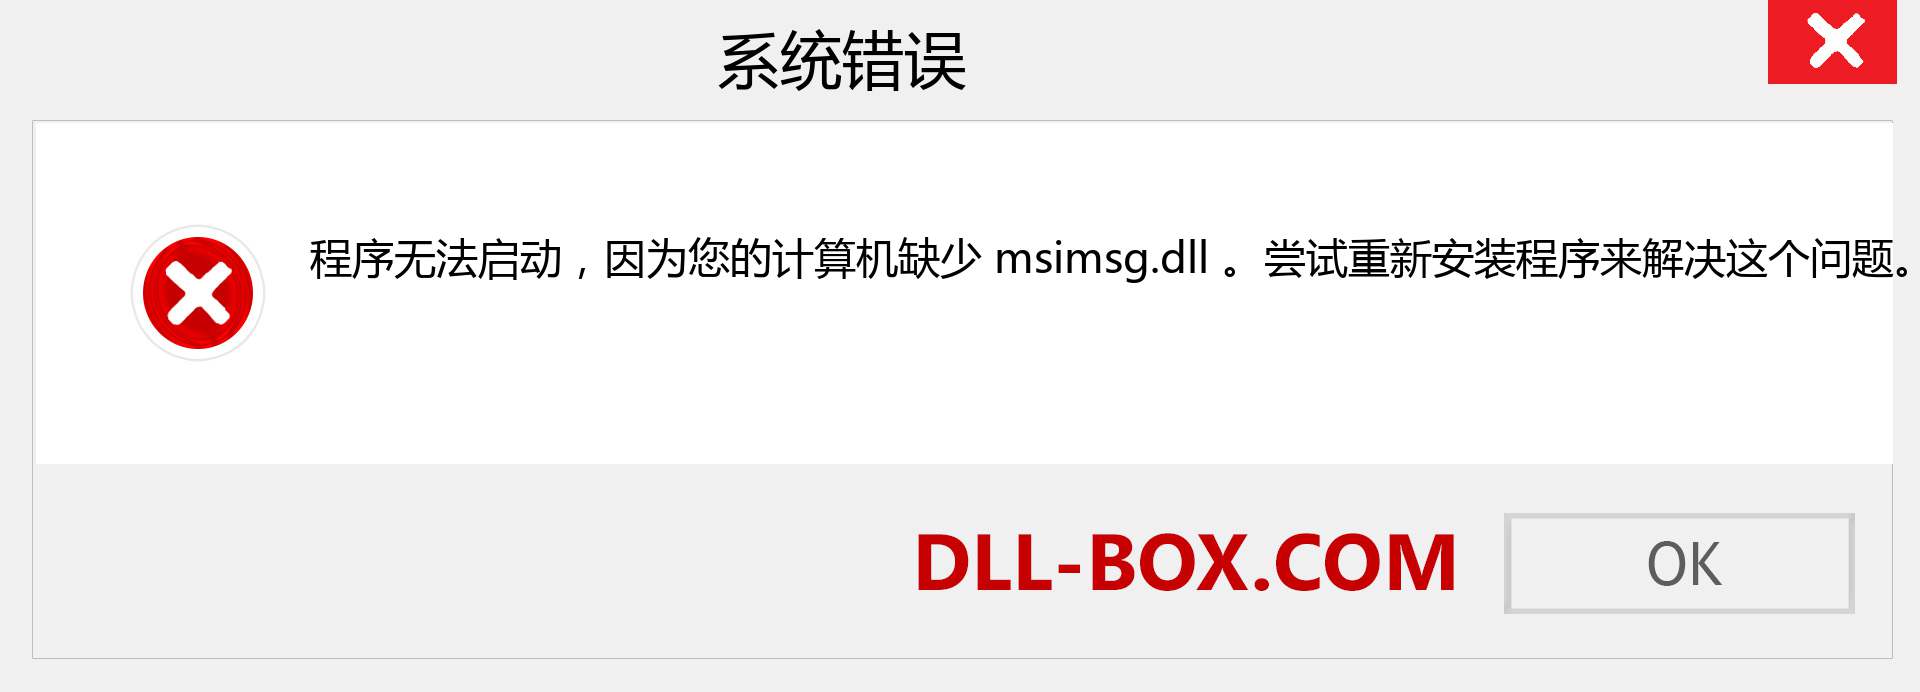 msimsg.dll 文件丢失？。 适用于 Windows 7、8、10 的下载 - 修复 Windows、照片、图像上的 msimsg dll 丢失错误